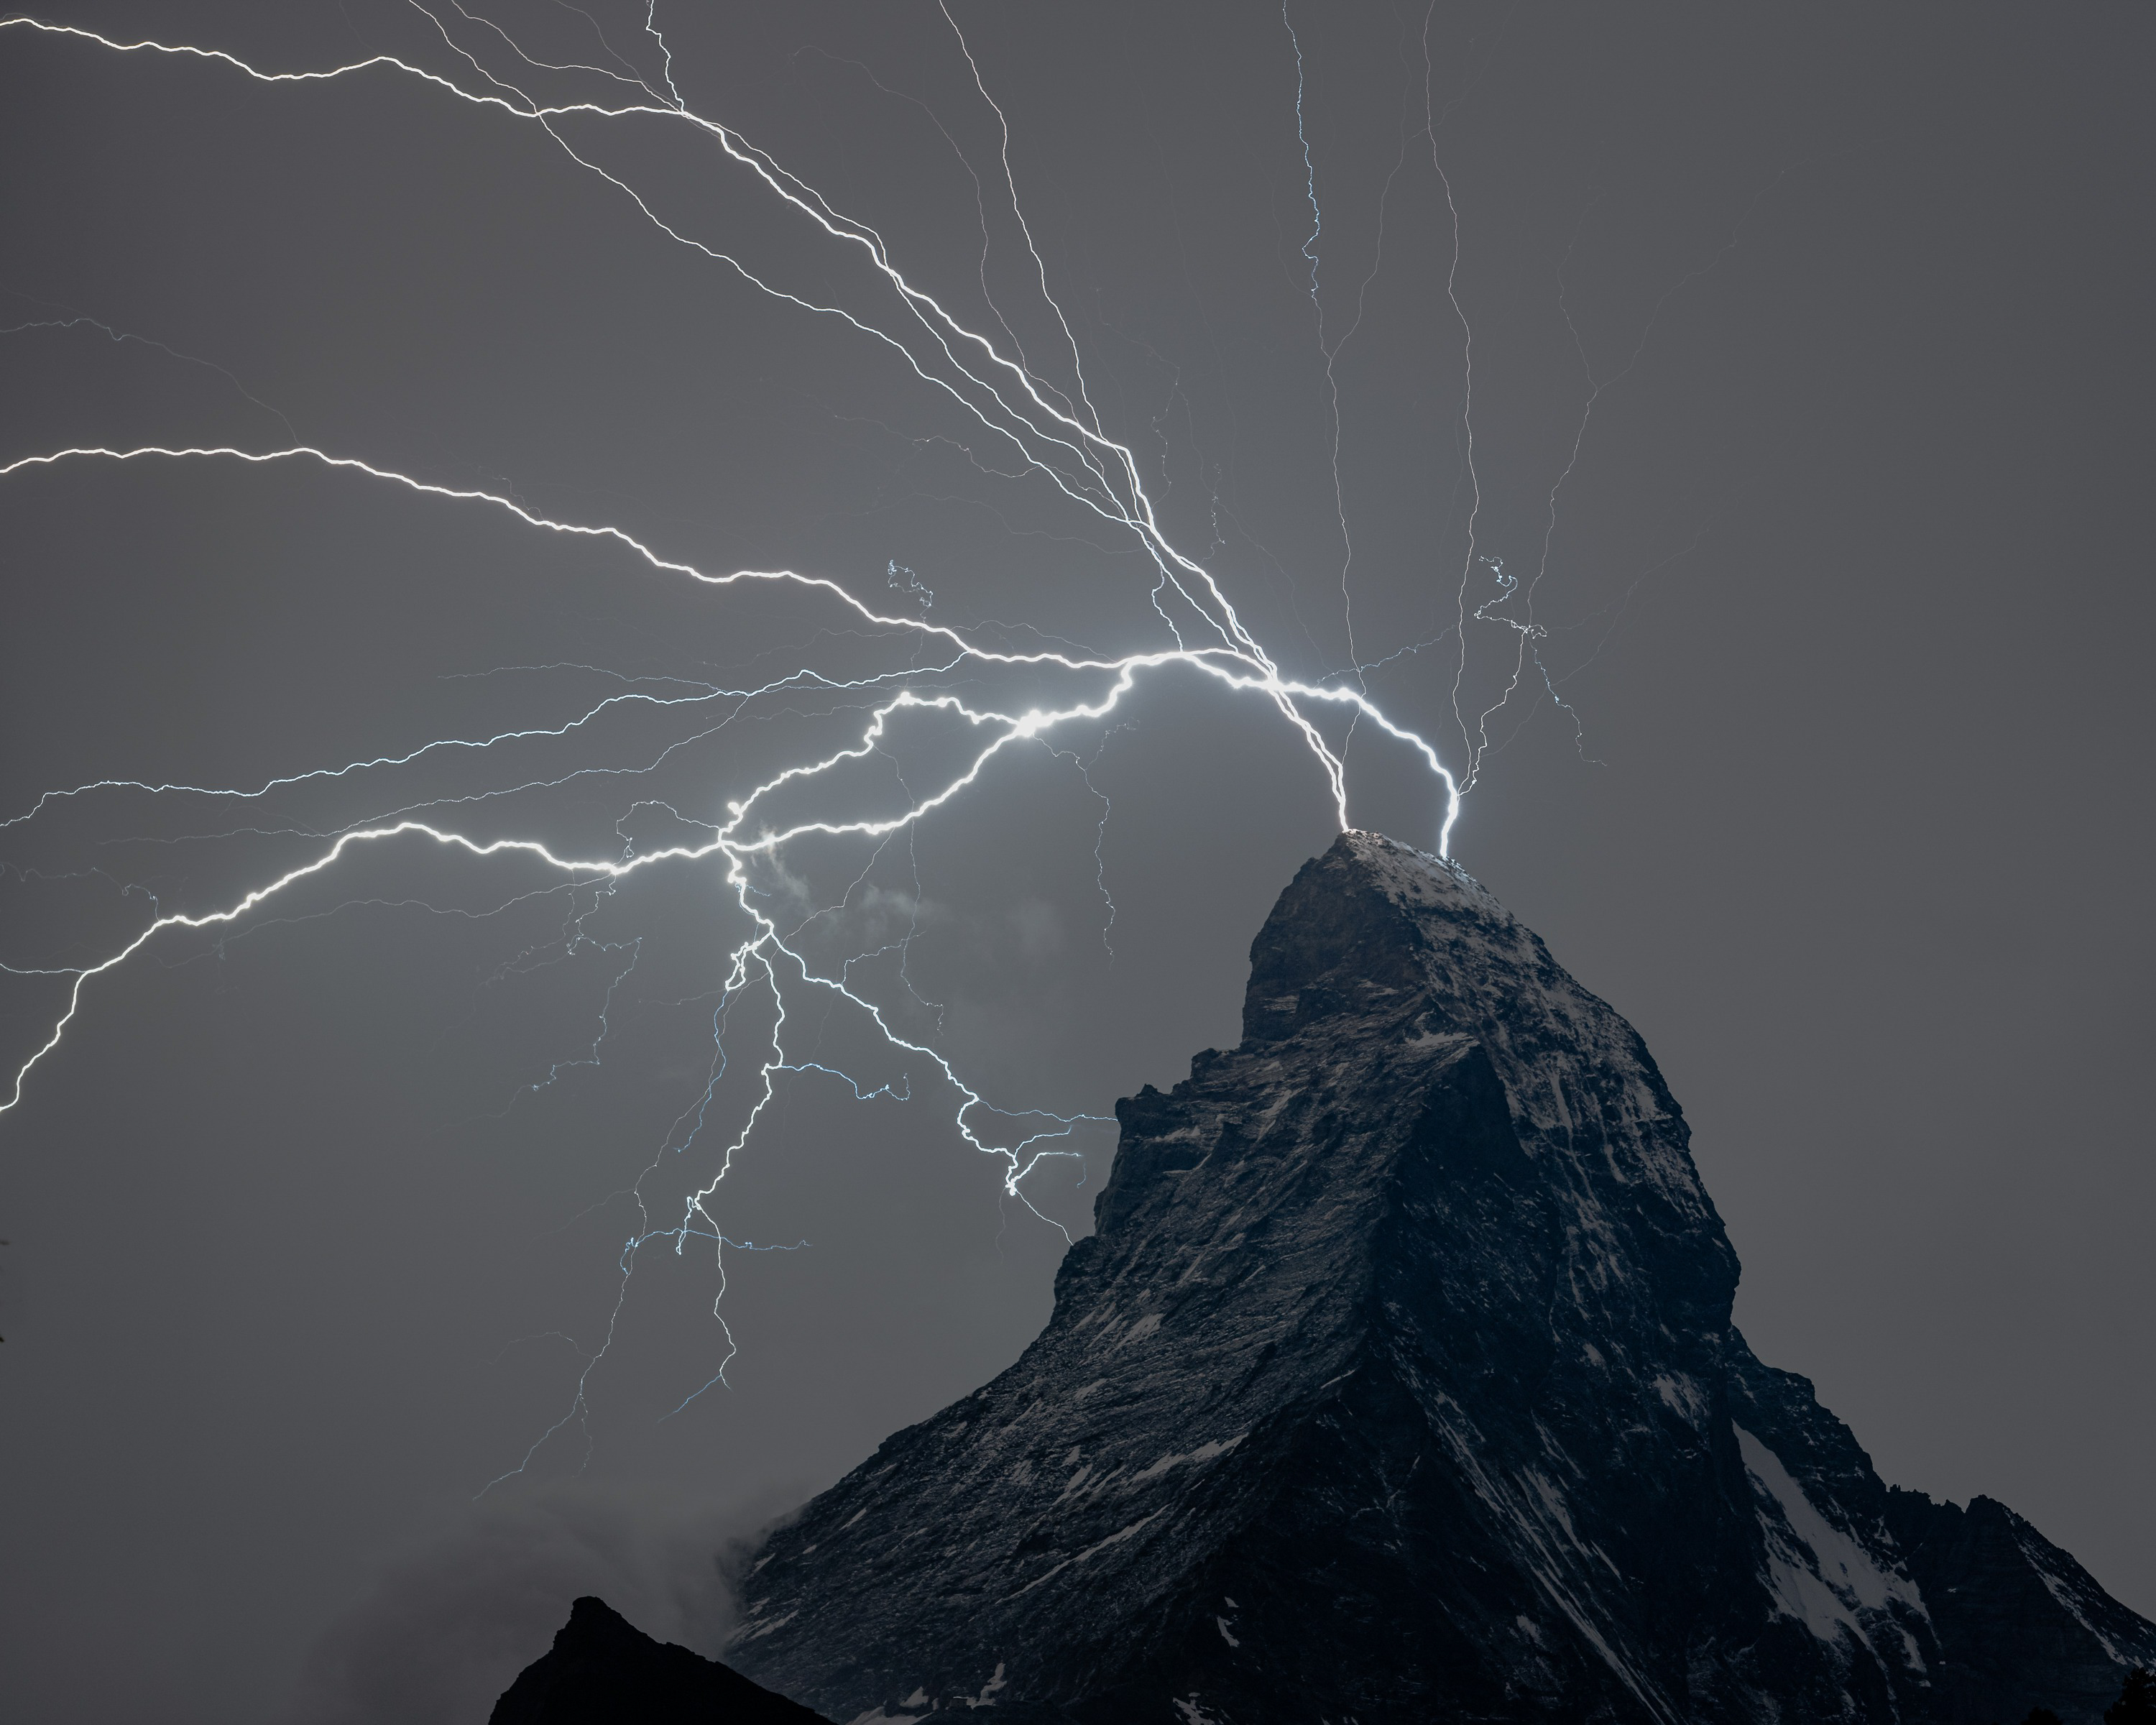 A lightning strike on the Matterhorn mountain